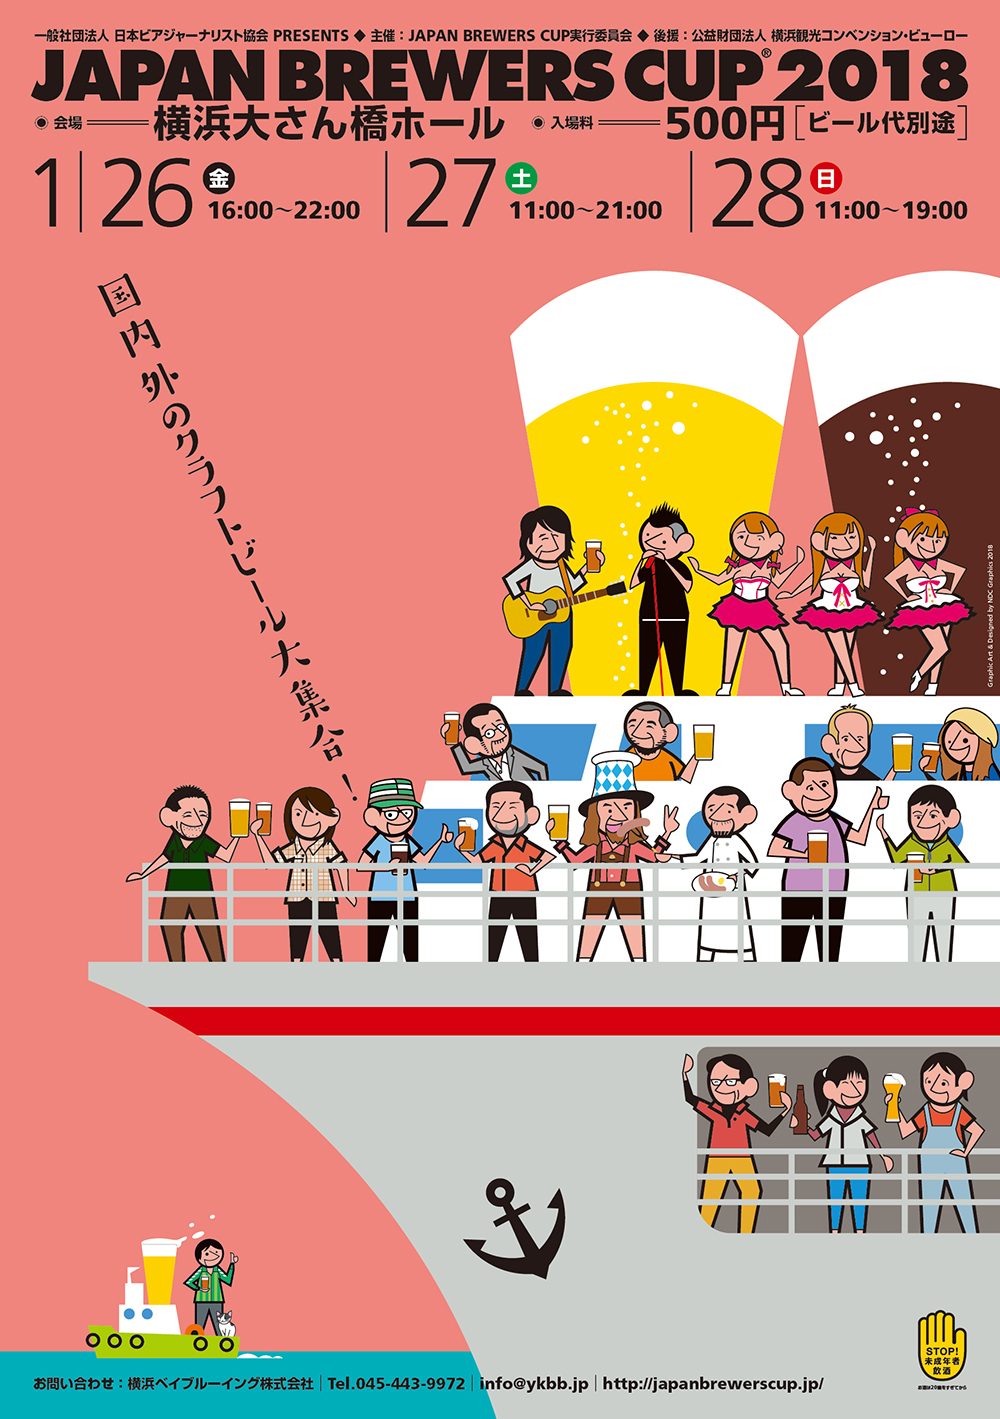 http://japanbrewerscup.jp/BrewersCup2018_Flyer_01.jpg